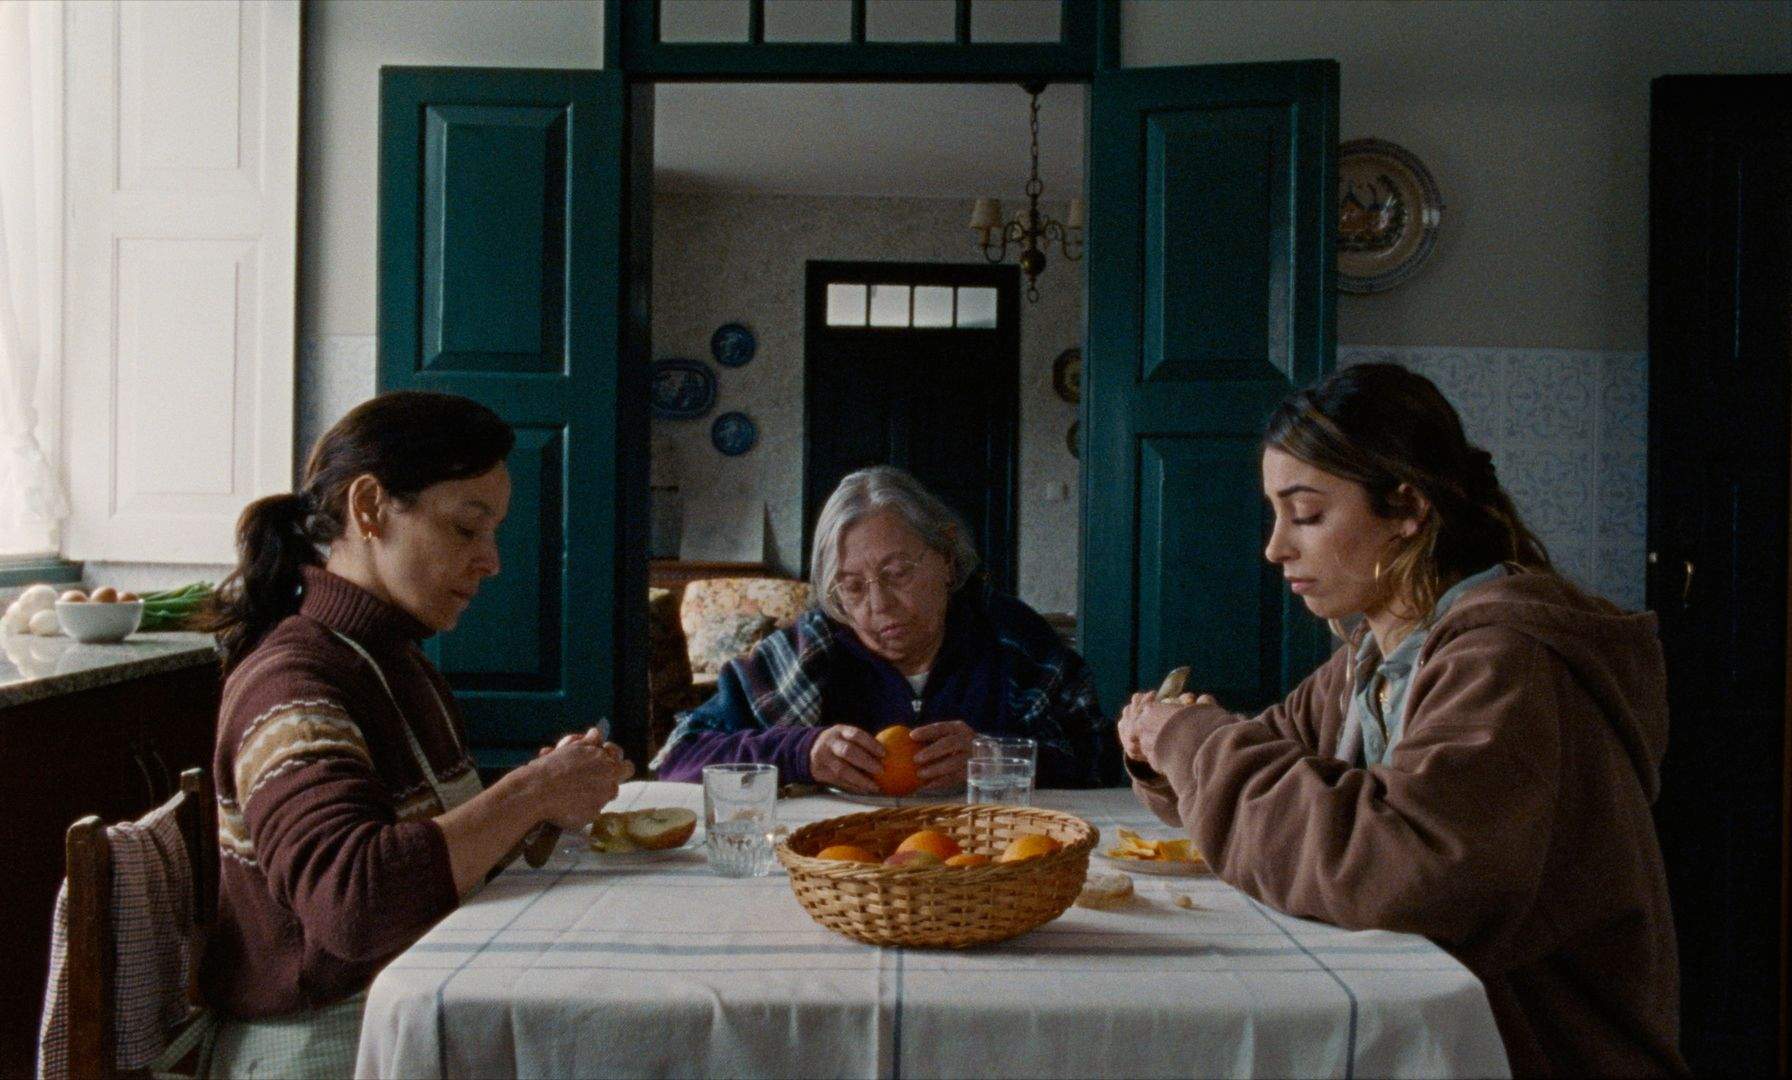 Légua, filme realizado por Filipa Reis e João Miller Guerra, dia 29 de Junho nas salas portuguesas